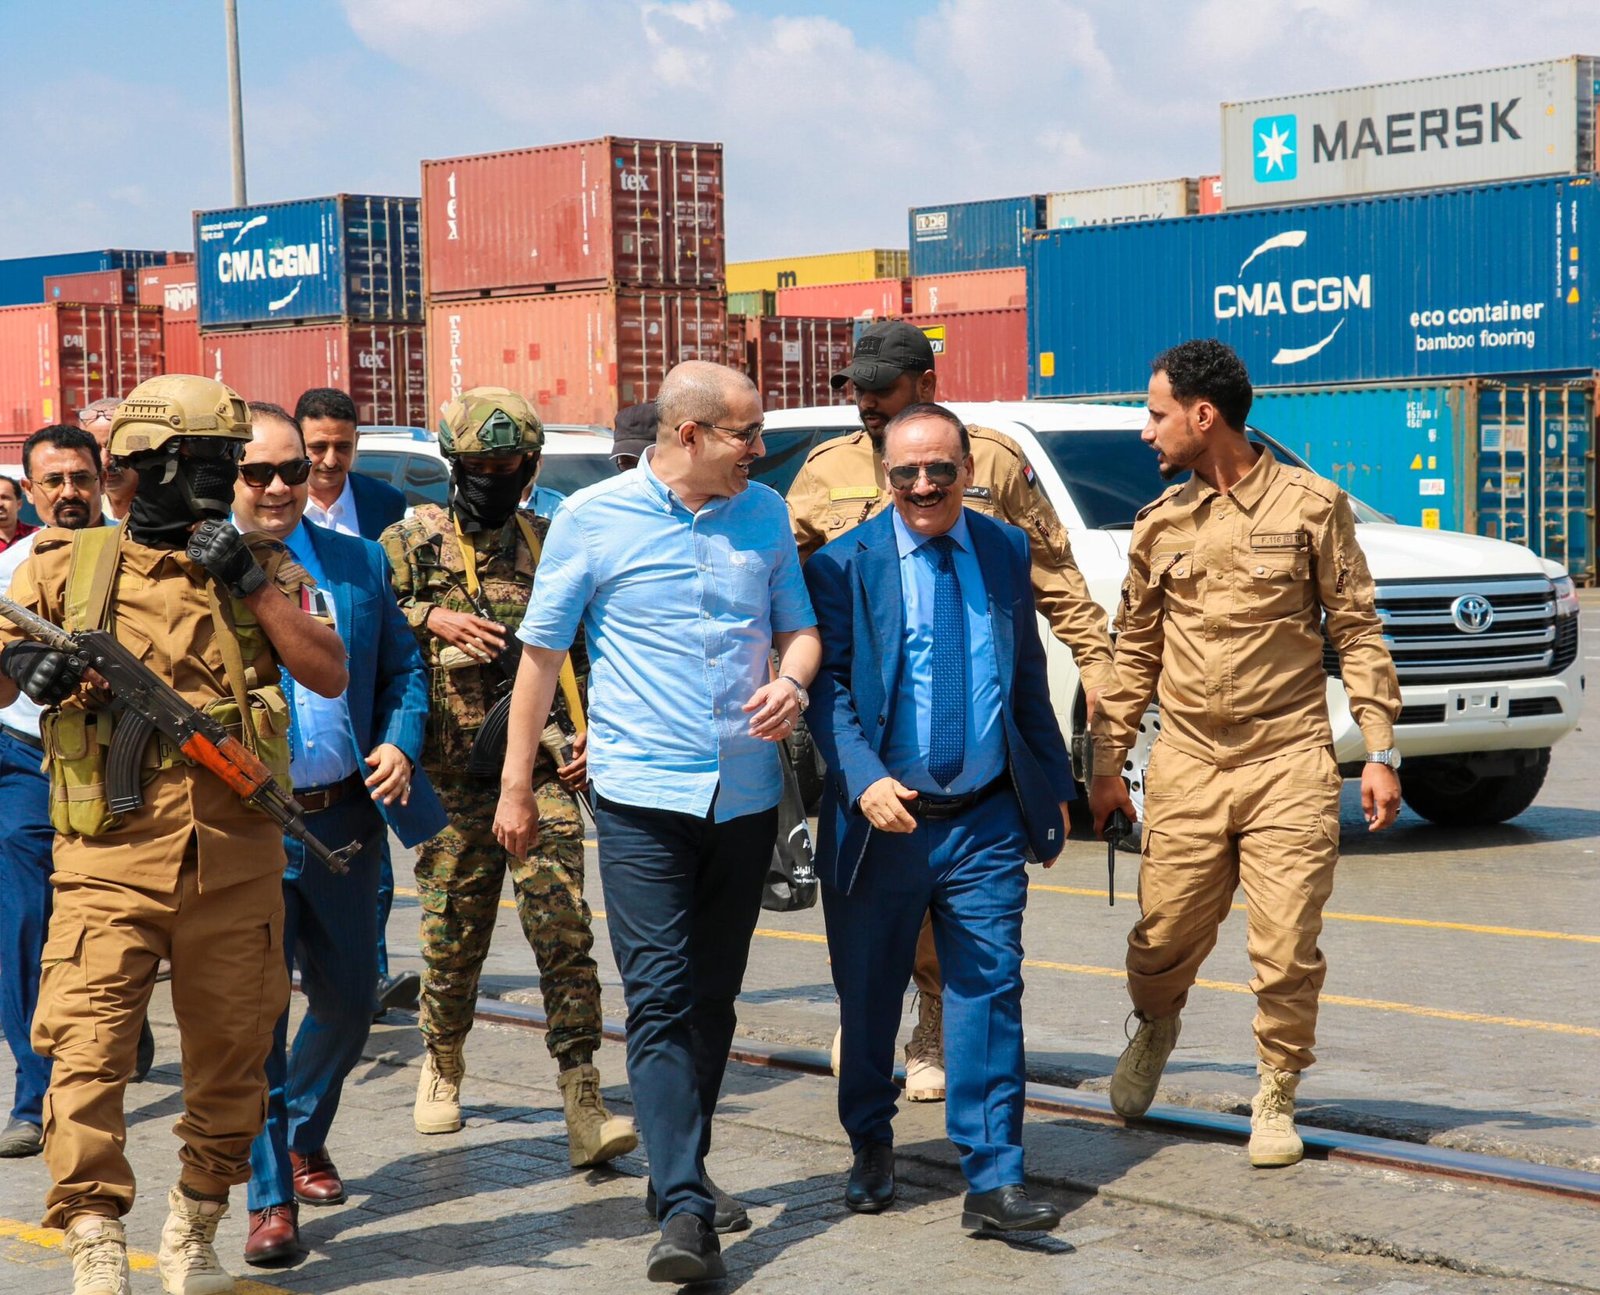 وزير النقل يطلع على سير العمل بمحطة الحاويات بميناء عدن مؤكداً ان الميناء يشهد تعافي ونشاط ملحوظ - العاصفة نيوز